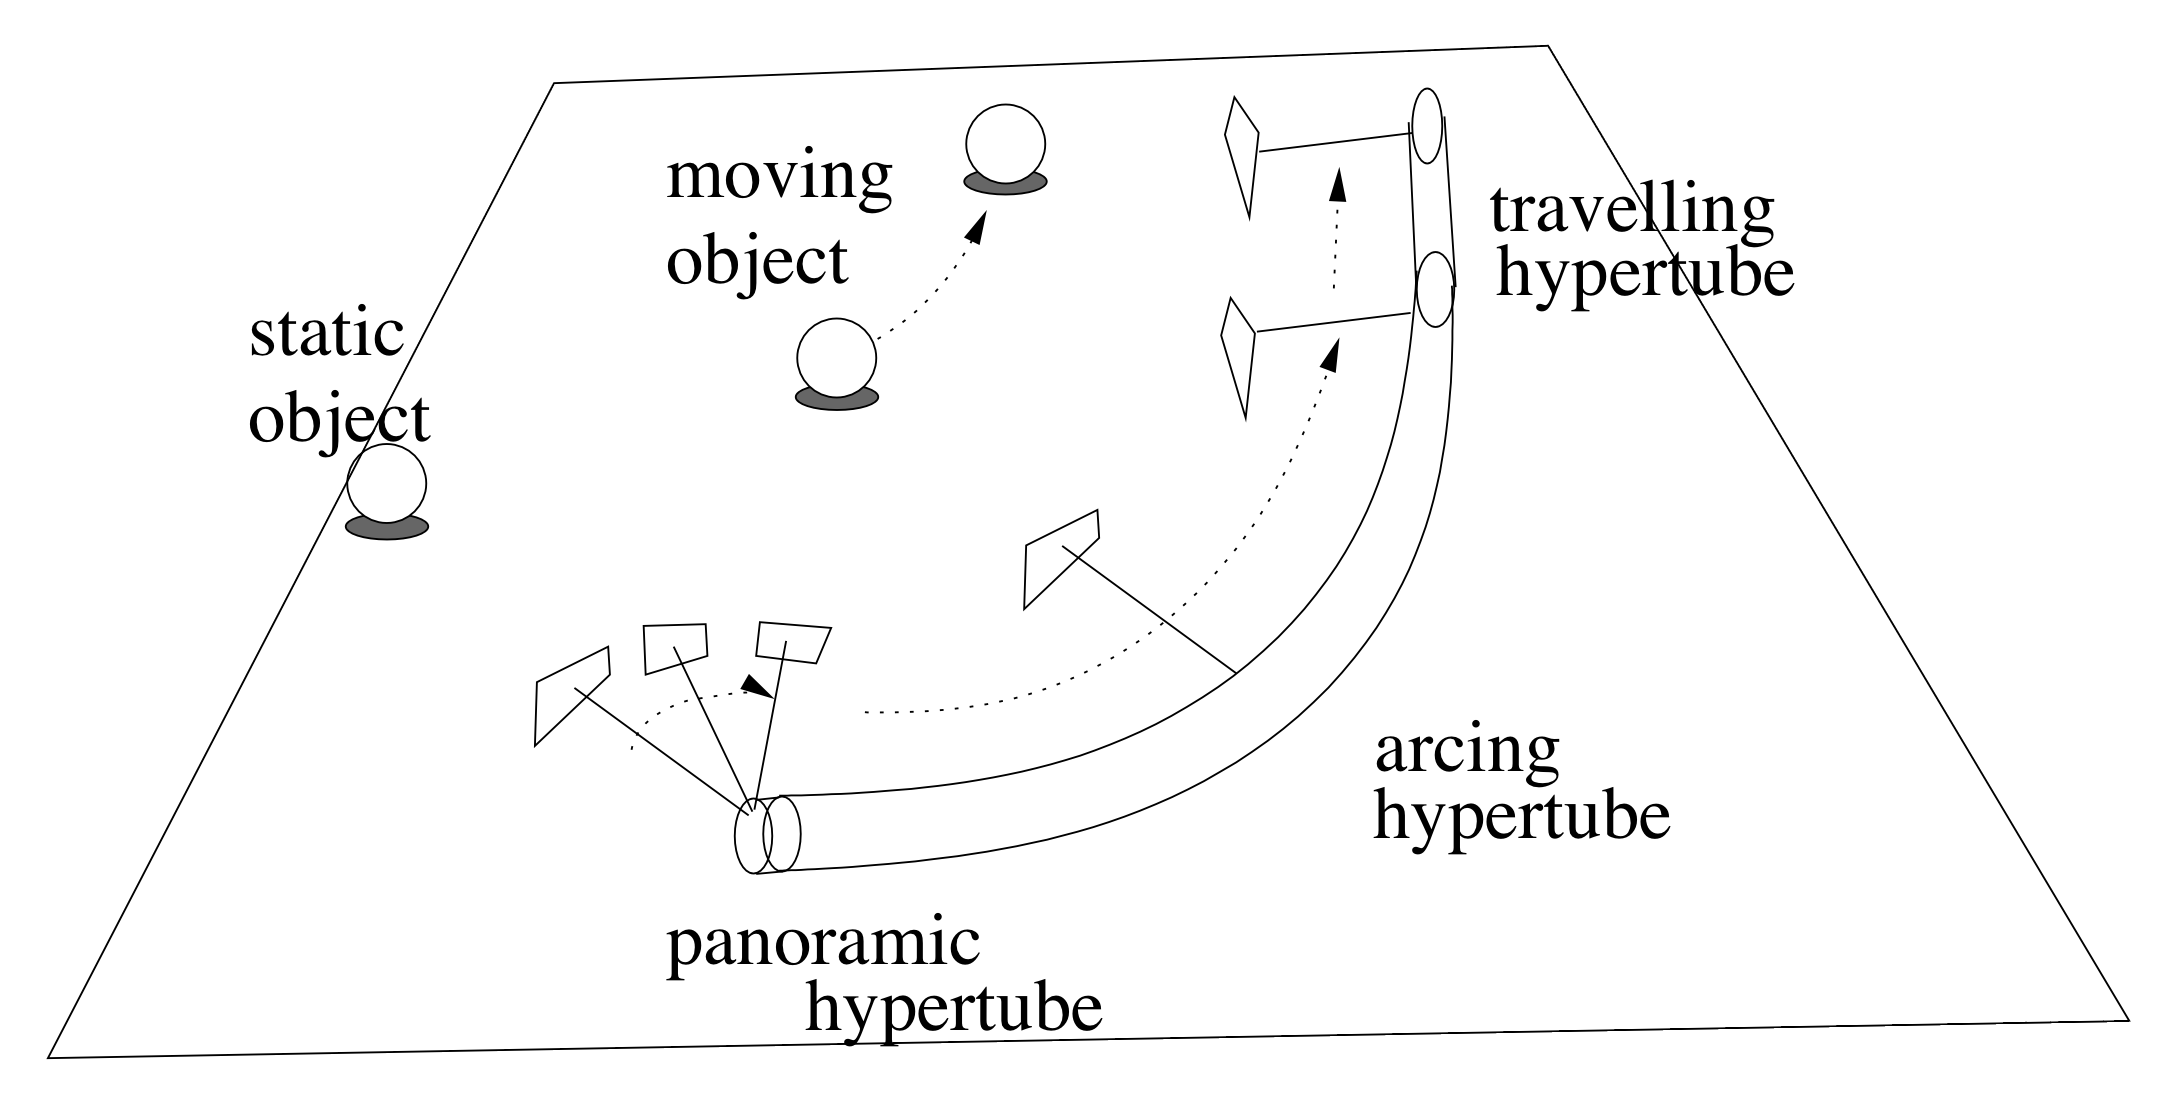 The notion of hypertubes